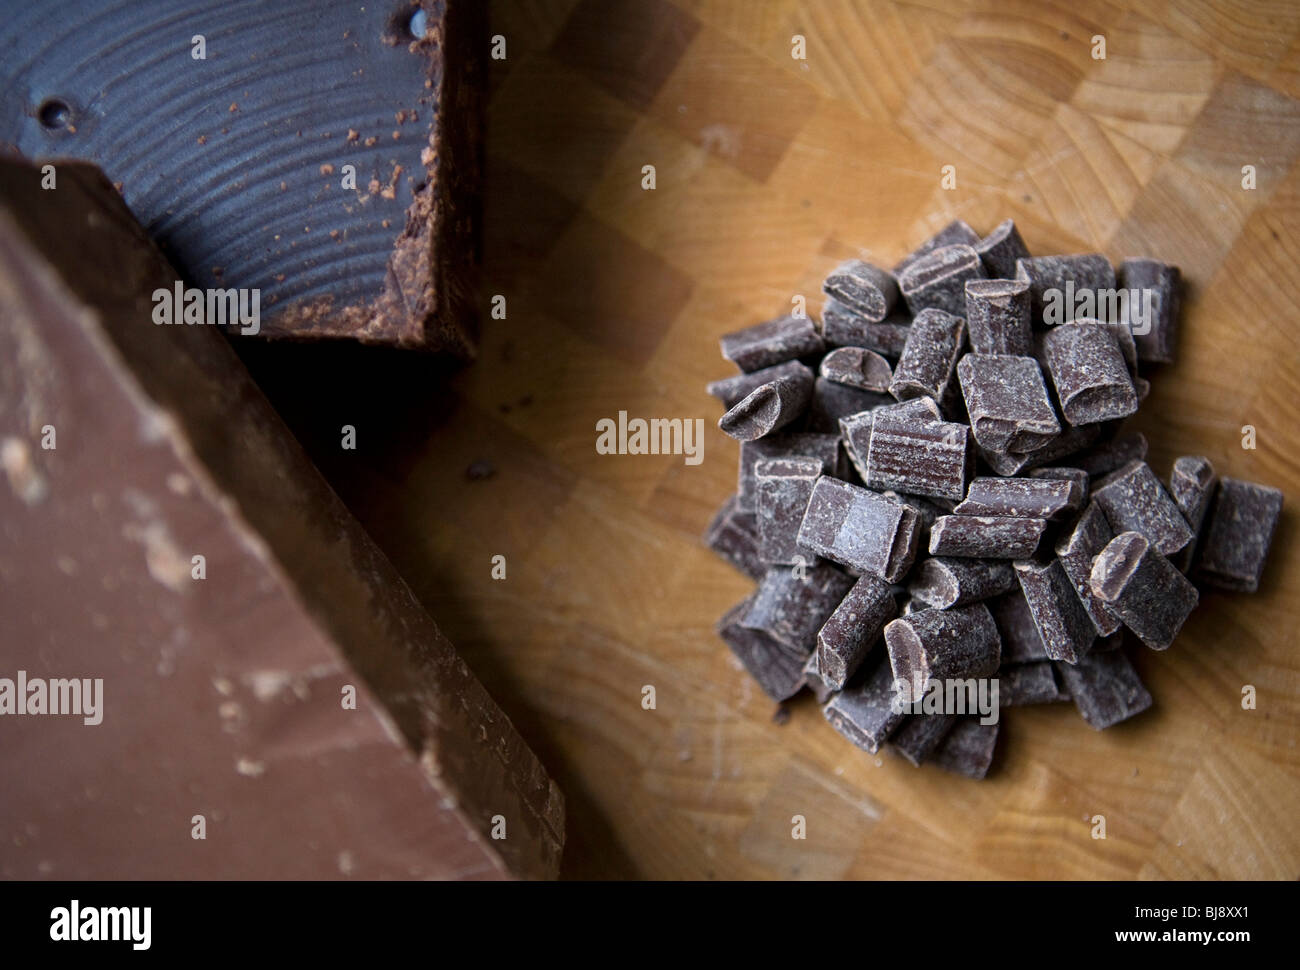 Dark and milk chocolate shavings and chunks.  Stock Photo